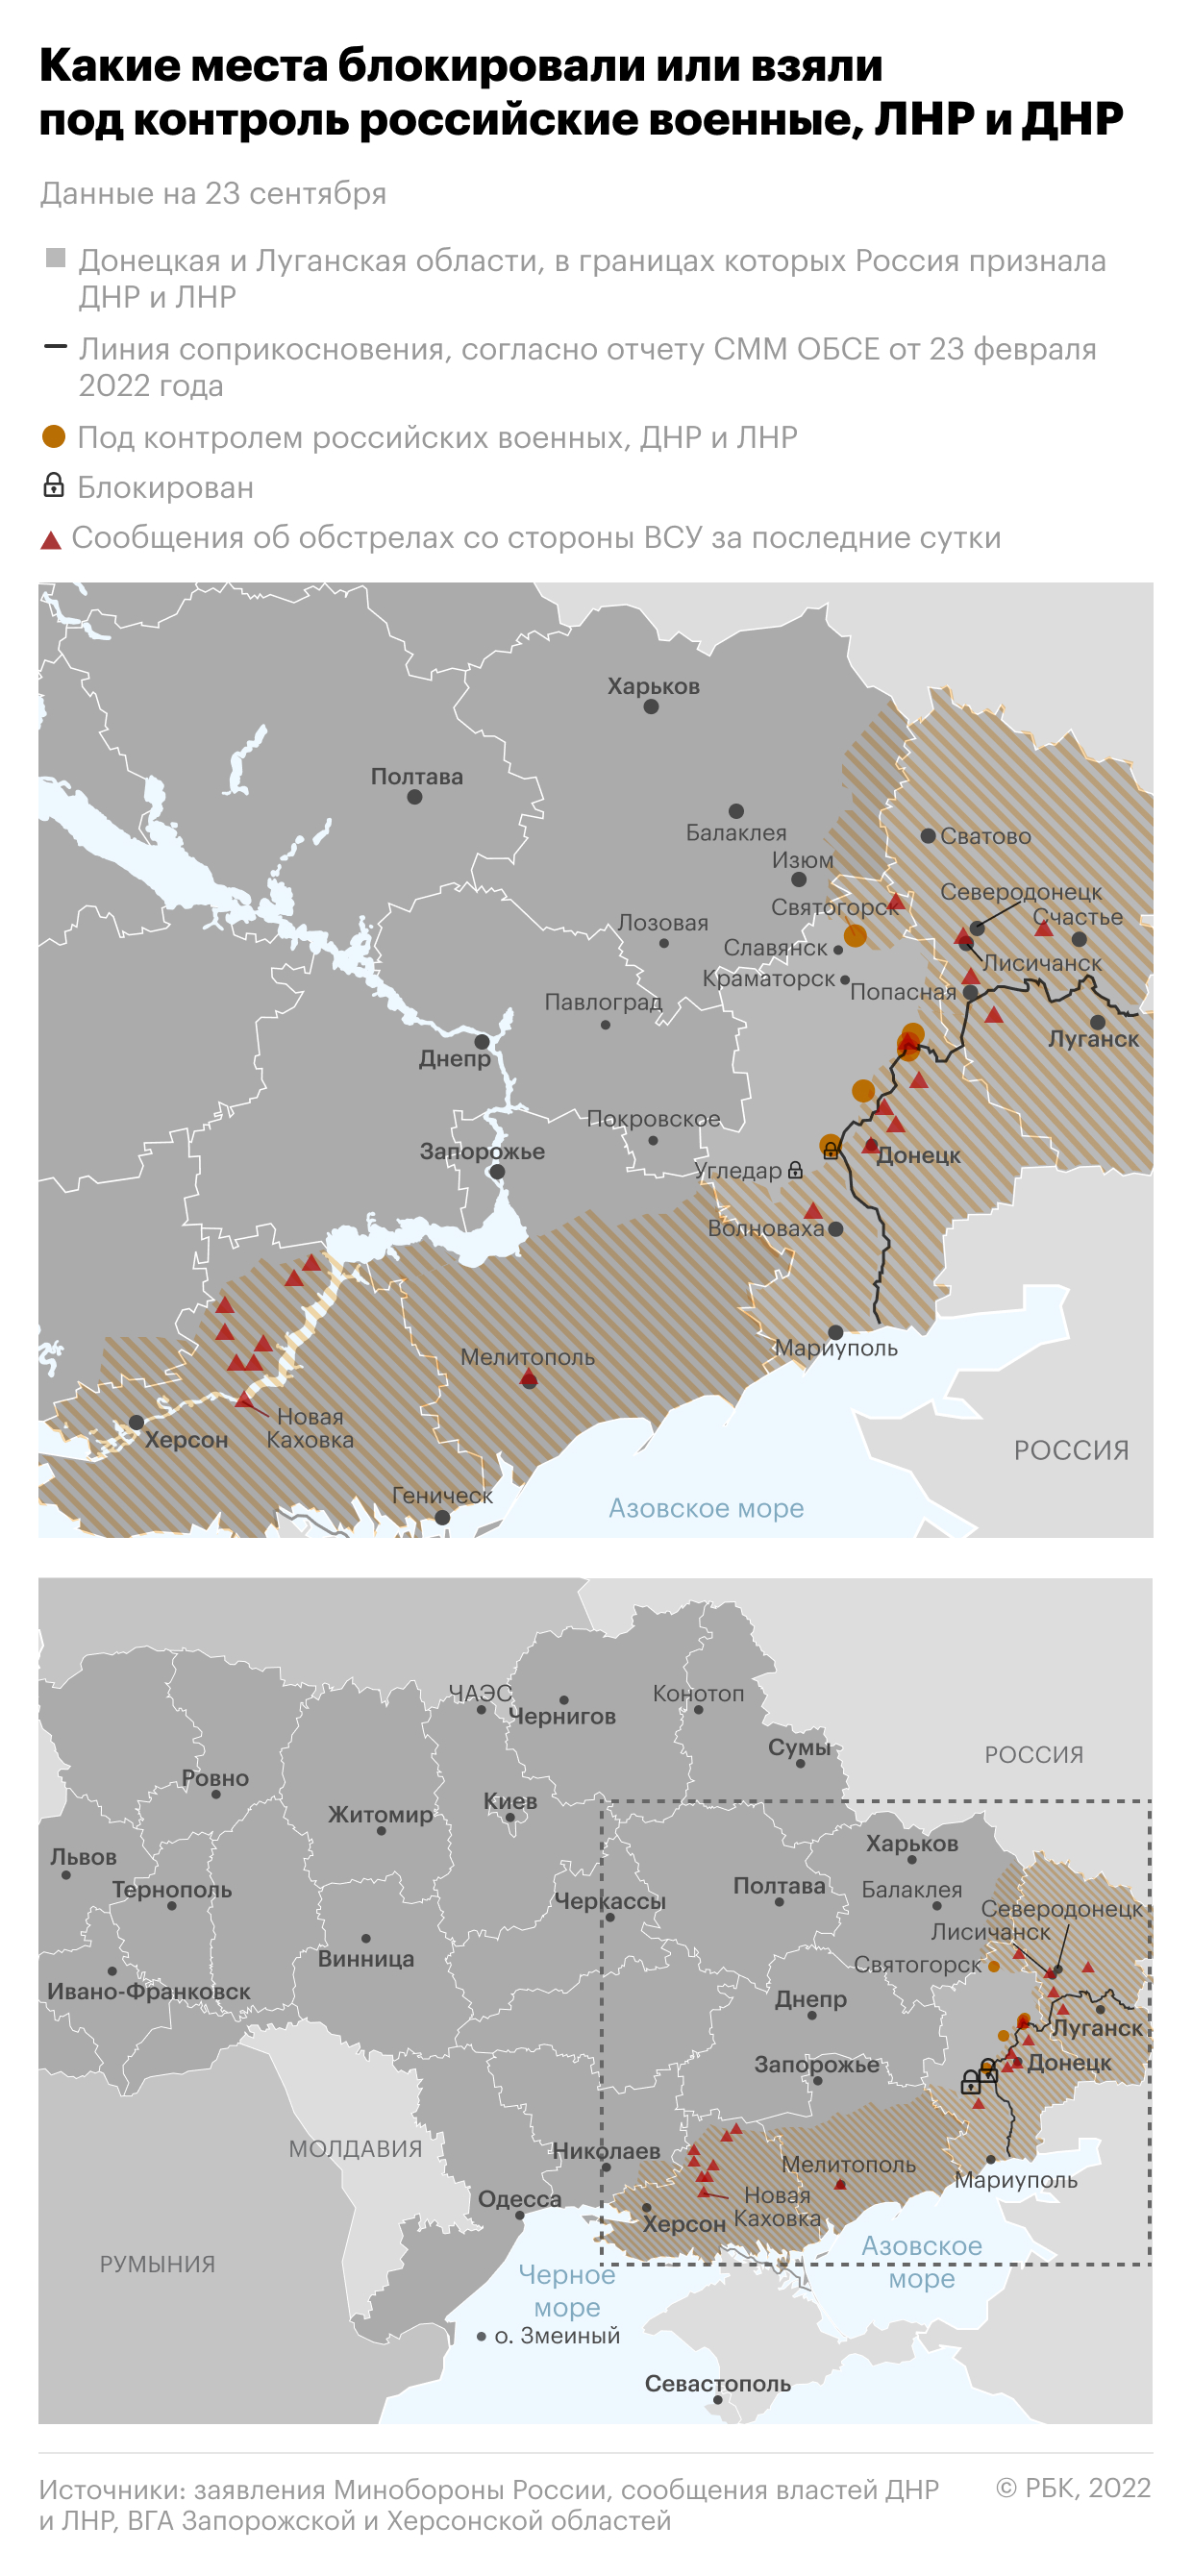 Референдумы в ДНР, ЛНР, Херсонской и Запорожской областях. Главное"/>













